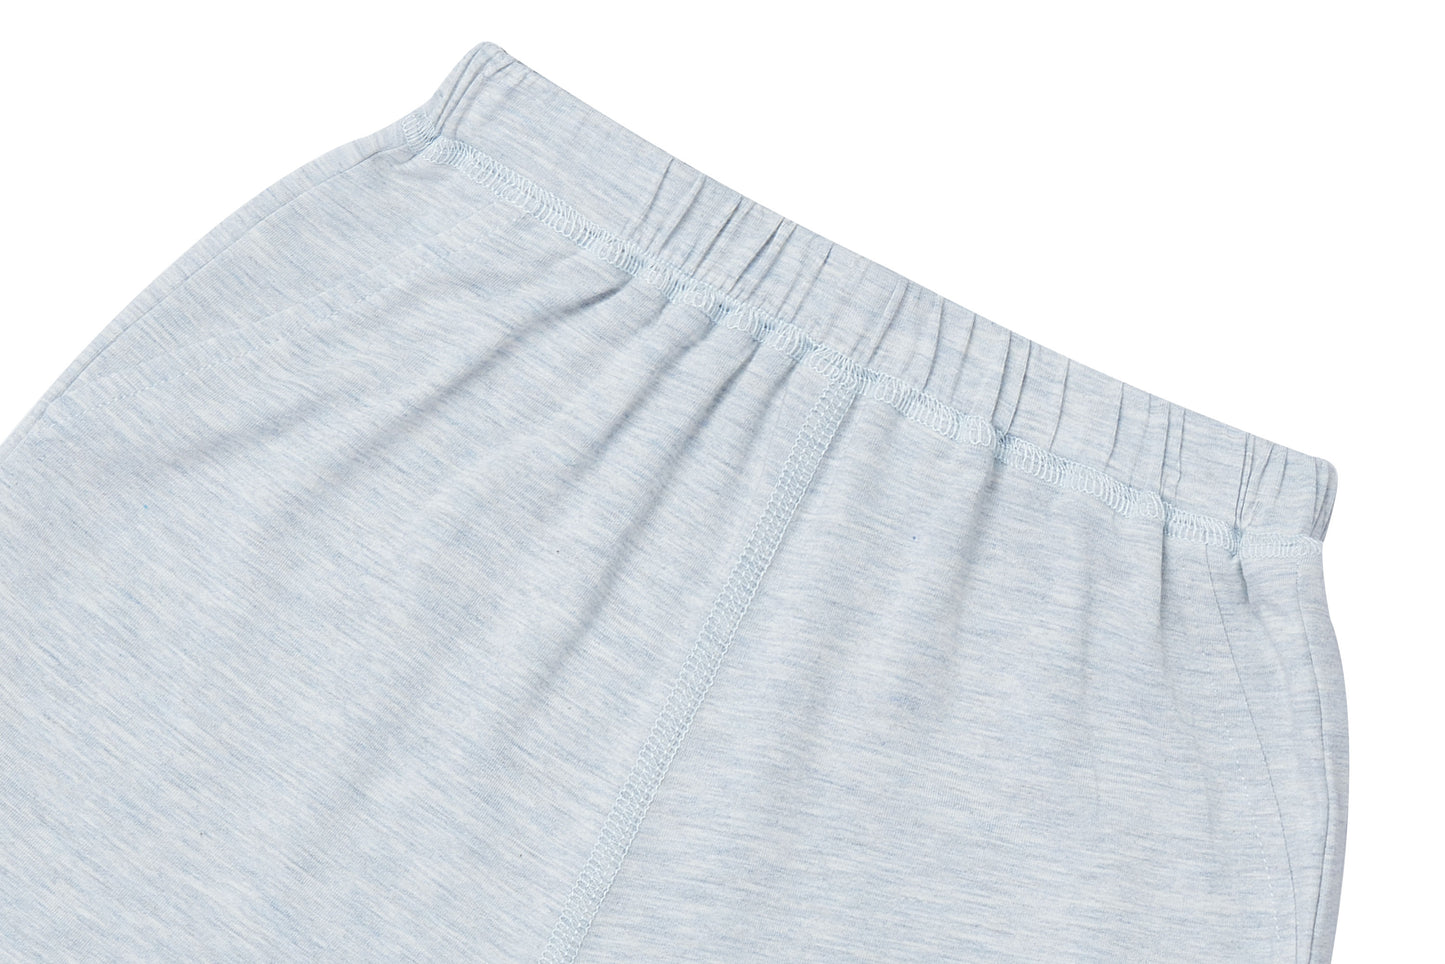 Basics Shorts (Bamboo Turalear) - Grey Dawn